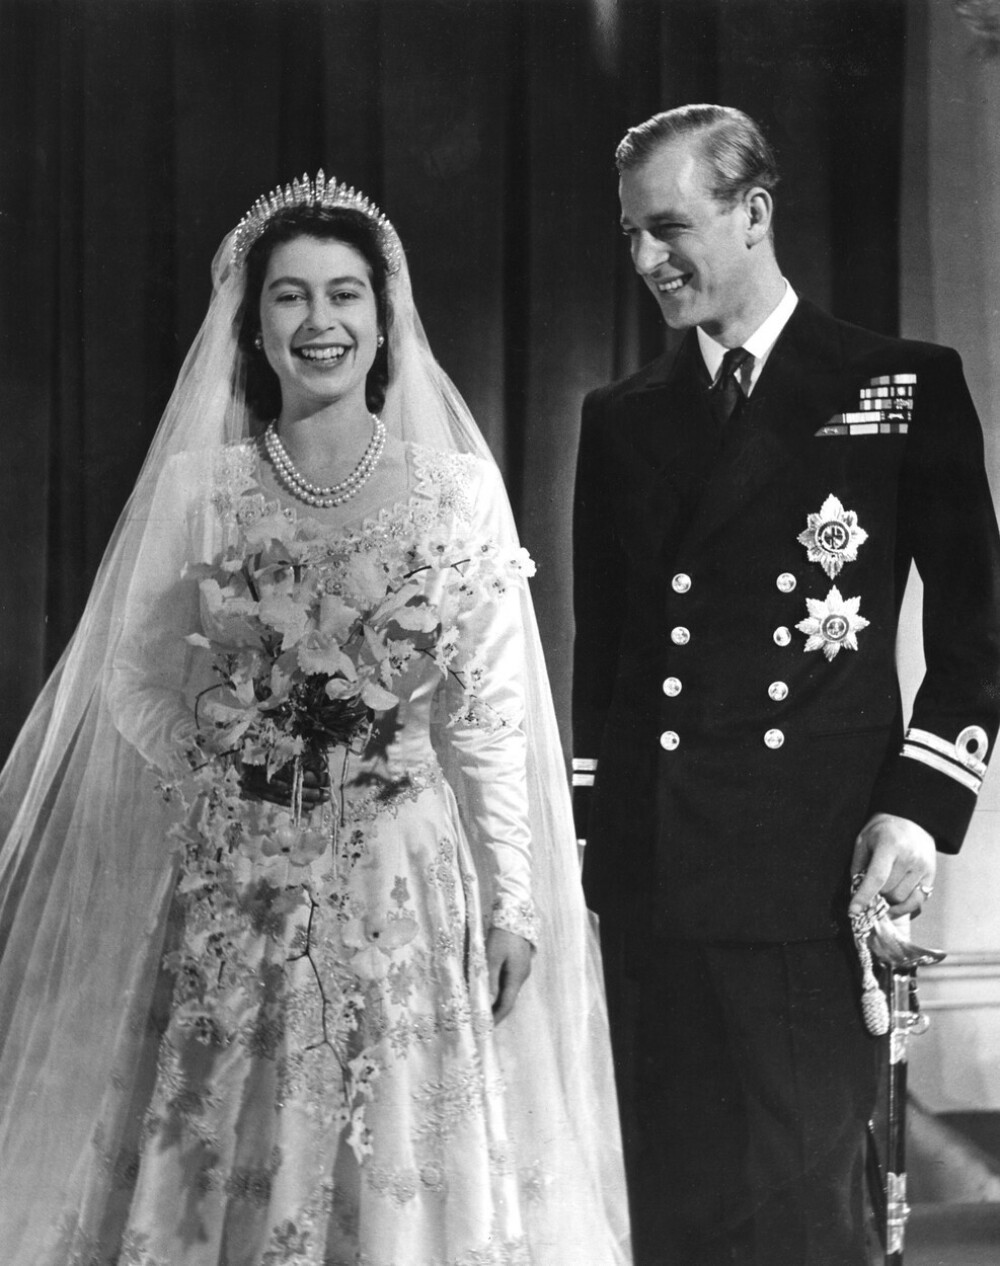 Regina Elisabeta şi prinţul Philip sărbătoresc 73 de ani de căsnicie. Imagini de la nuntă. GALERIE FOTO - Imaginea 4